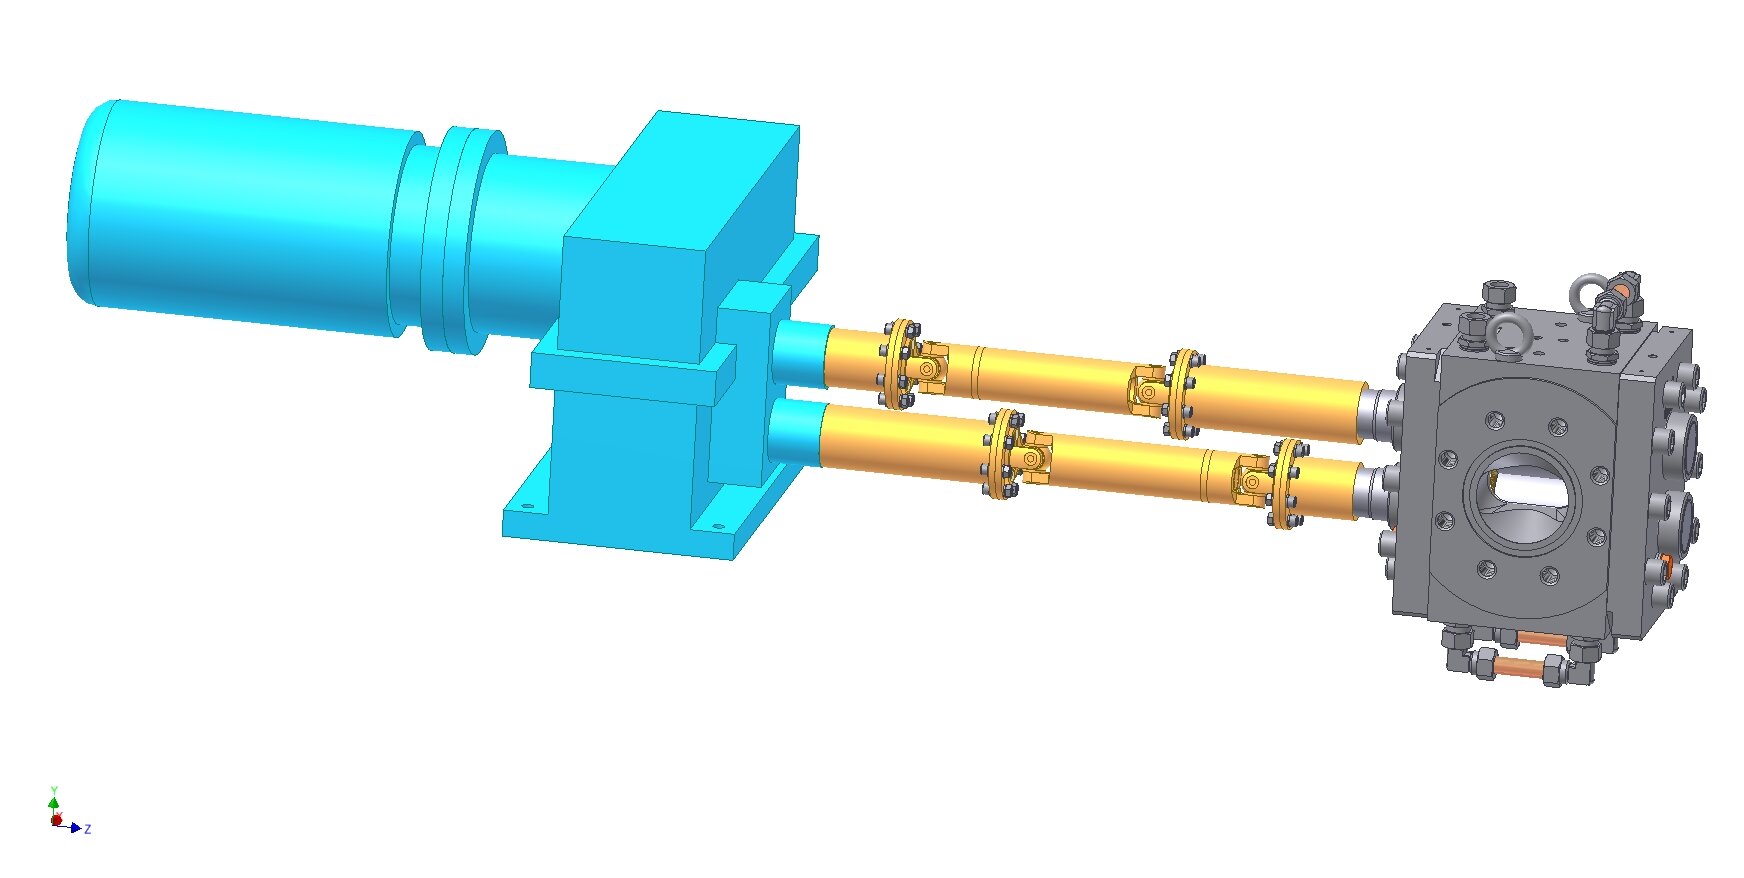  Eprotec bomba de engranajes para la extrusión de láminas de plástico (bomba de engranajes de extrusión) con engranaje de sincronización (accionamiento doble) para la producción de X-LDPE